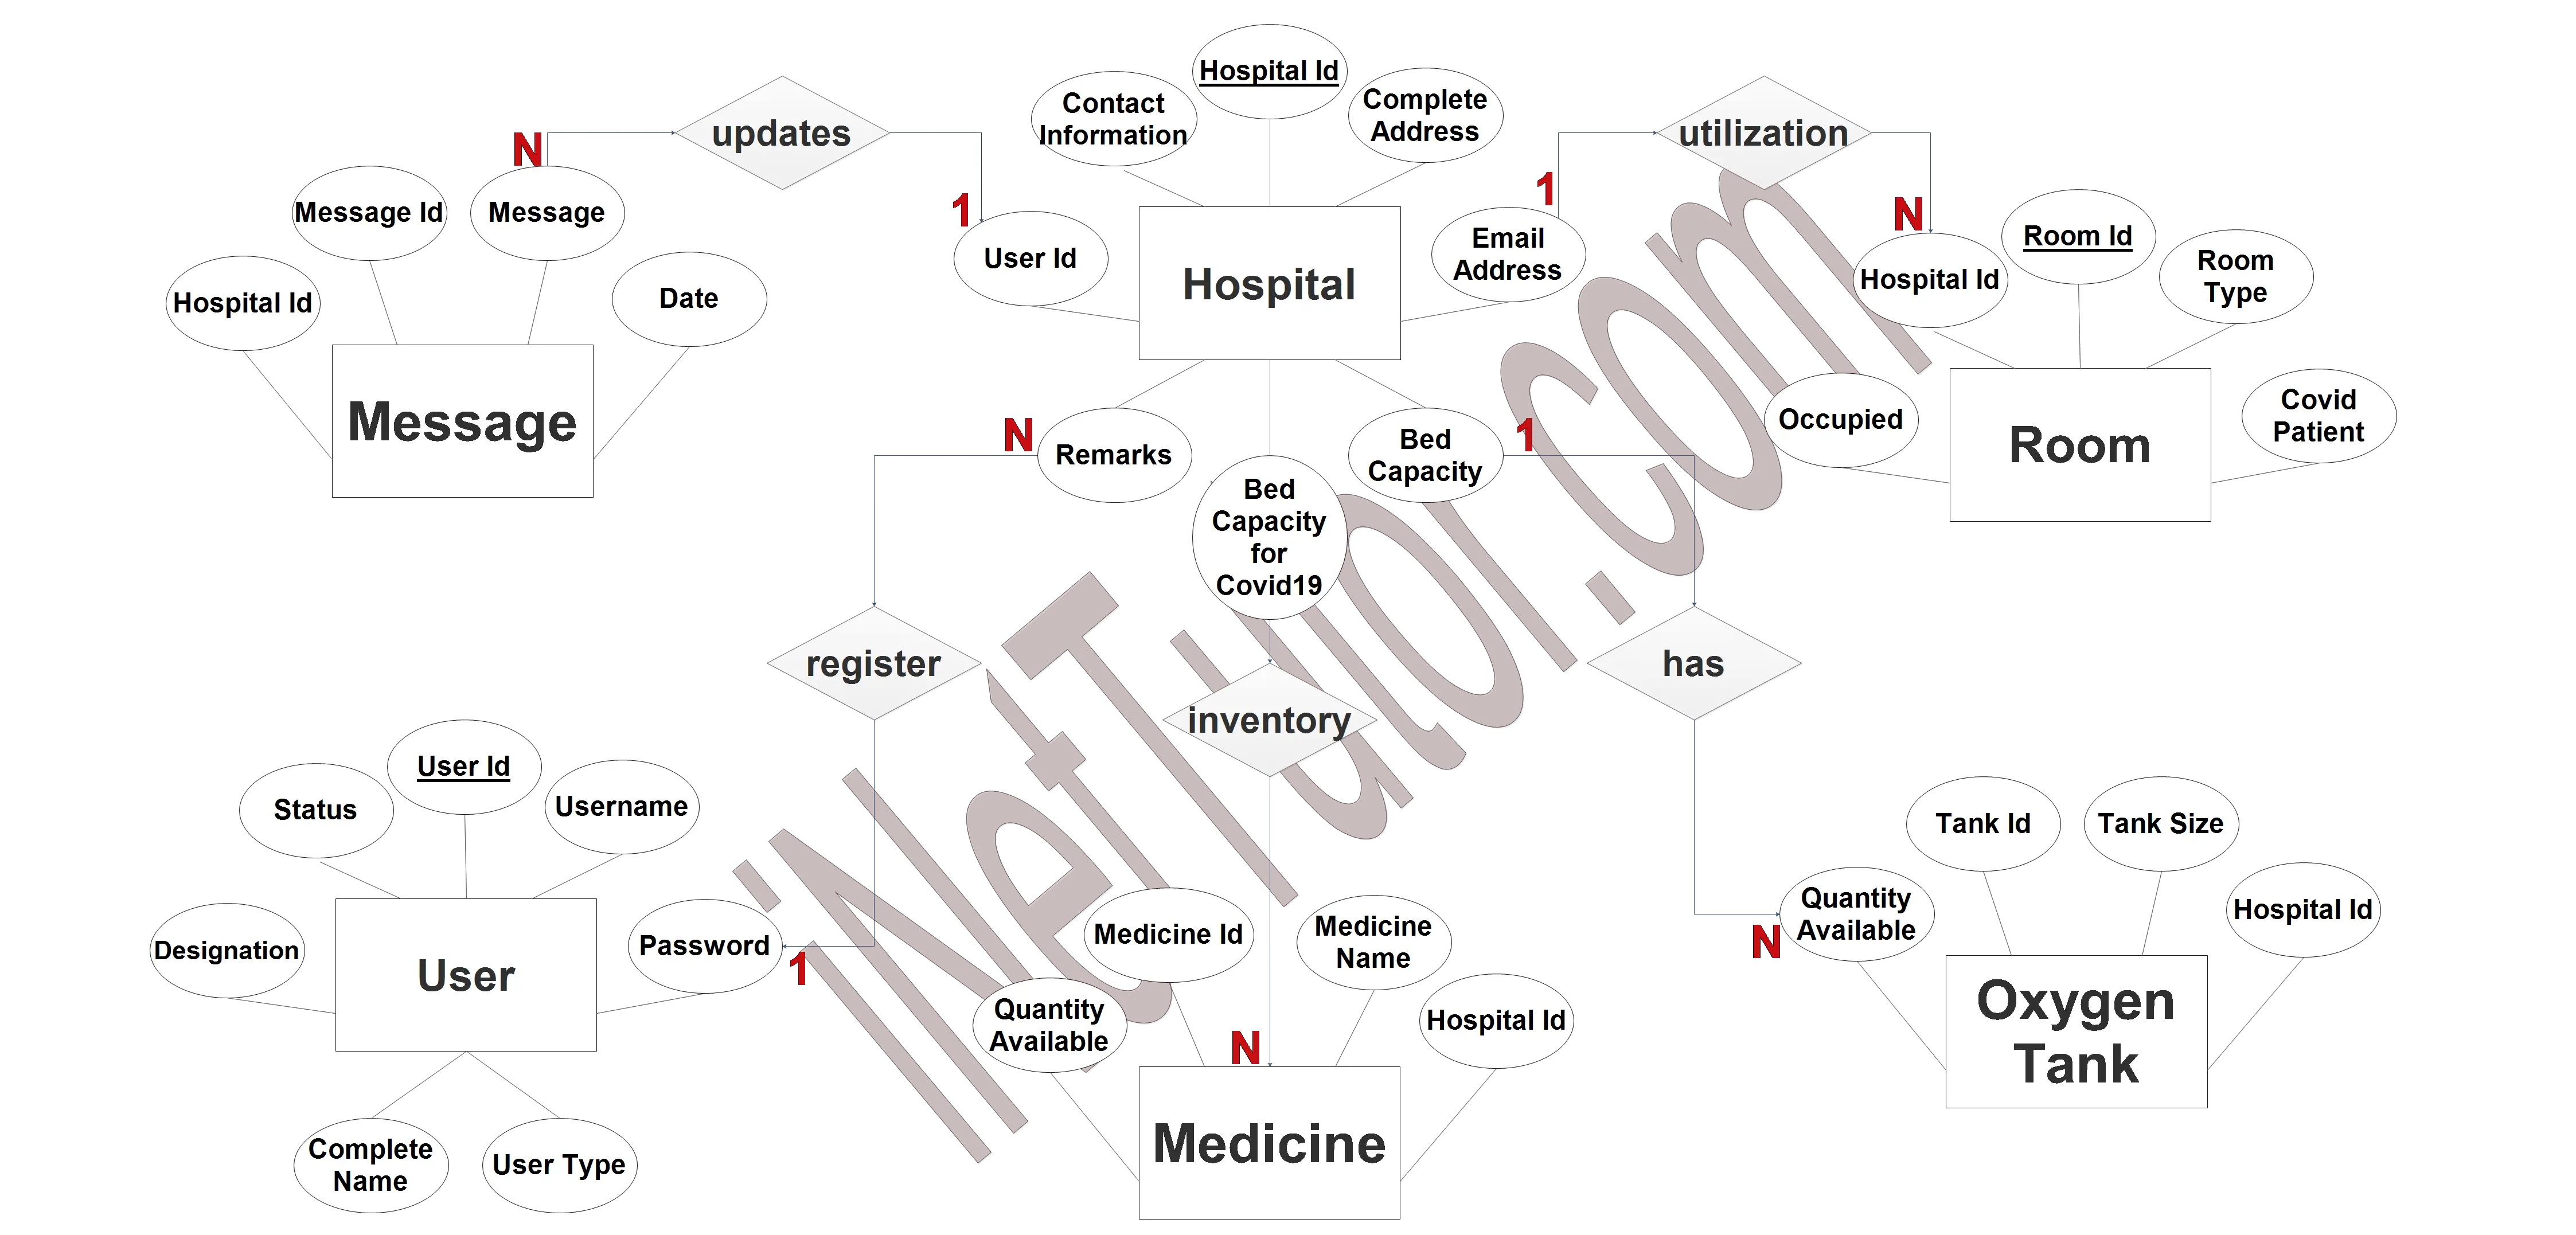 Hospital Resources and Room Utilization ER Diagram - Step 3 Complete ERD